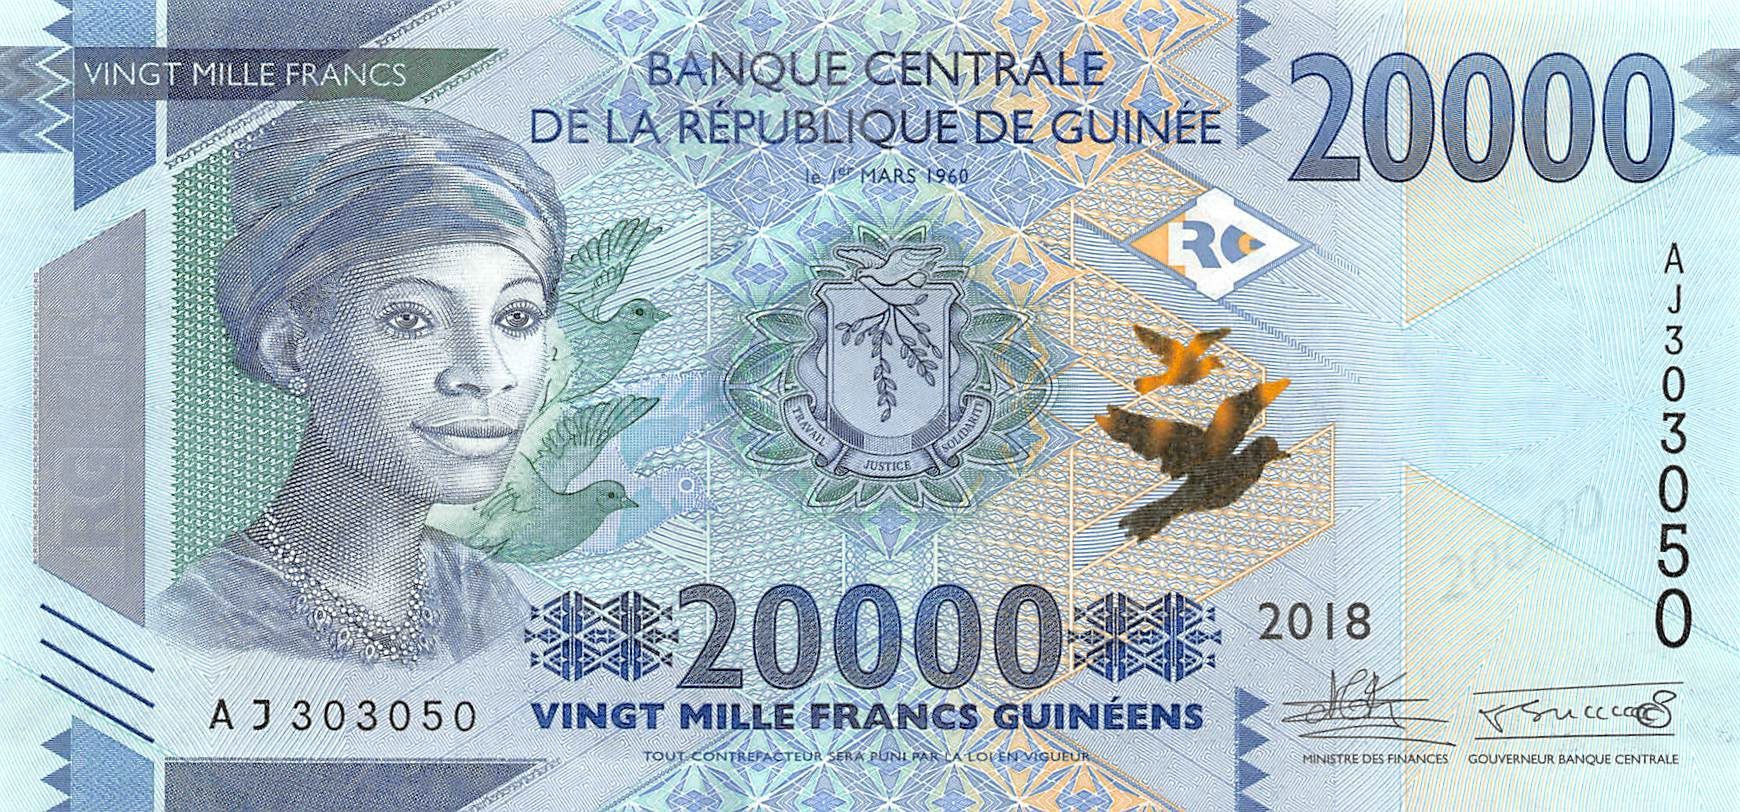 Guinea 20000 Francs 2018 Unc